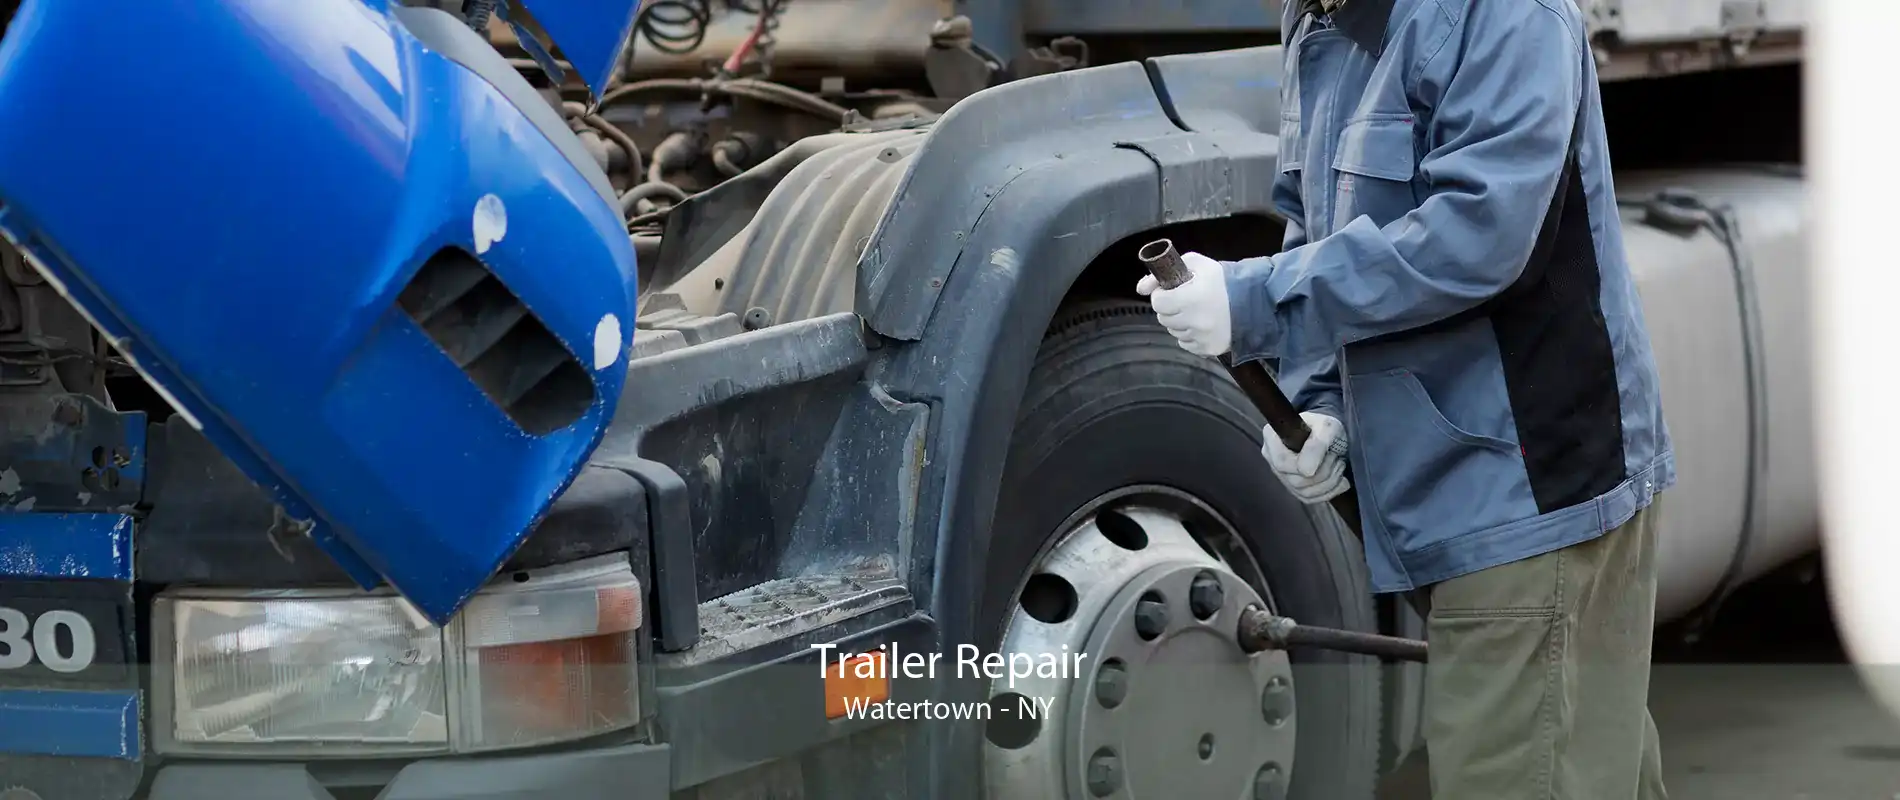 Trailer Repair Watertown - NY